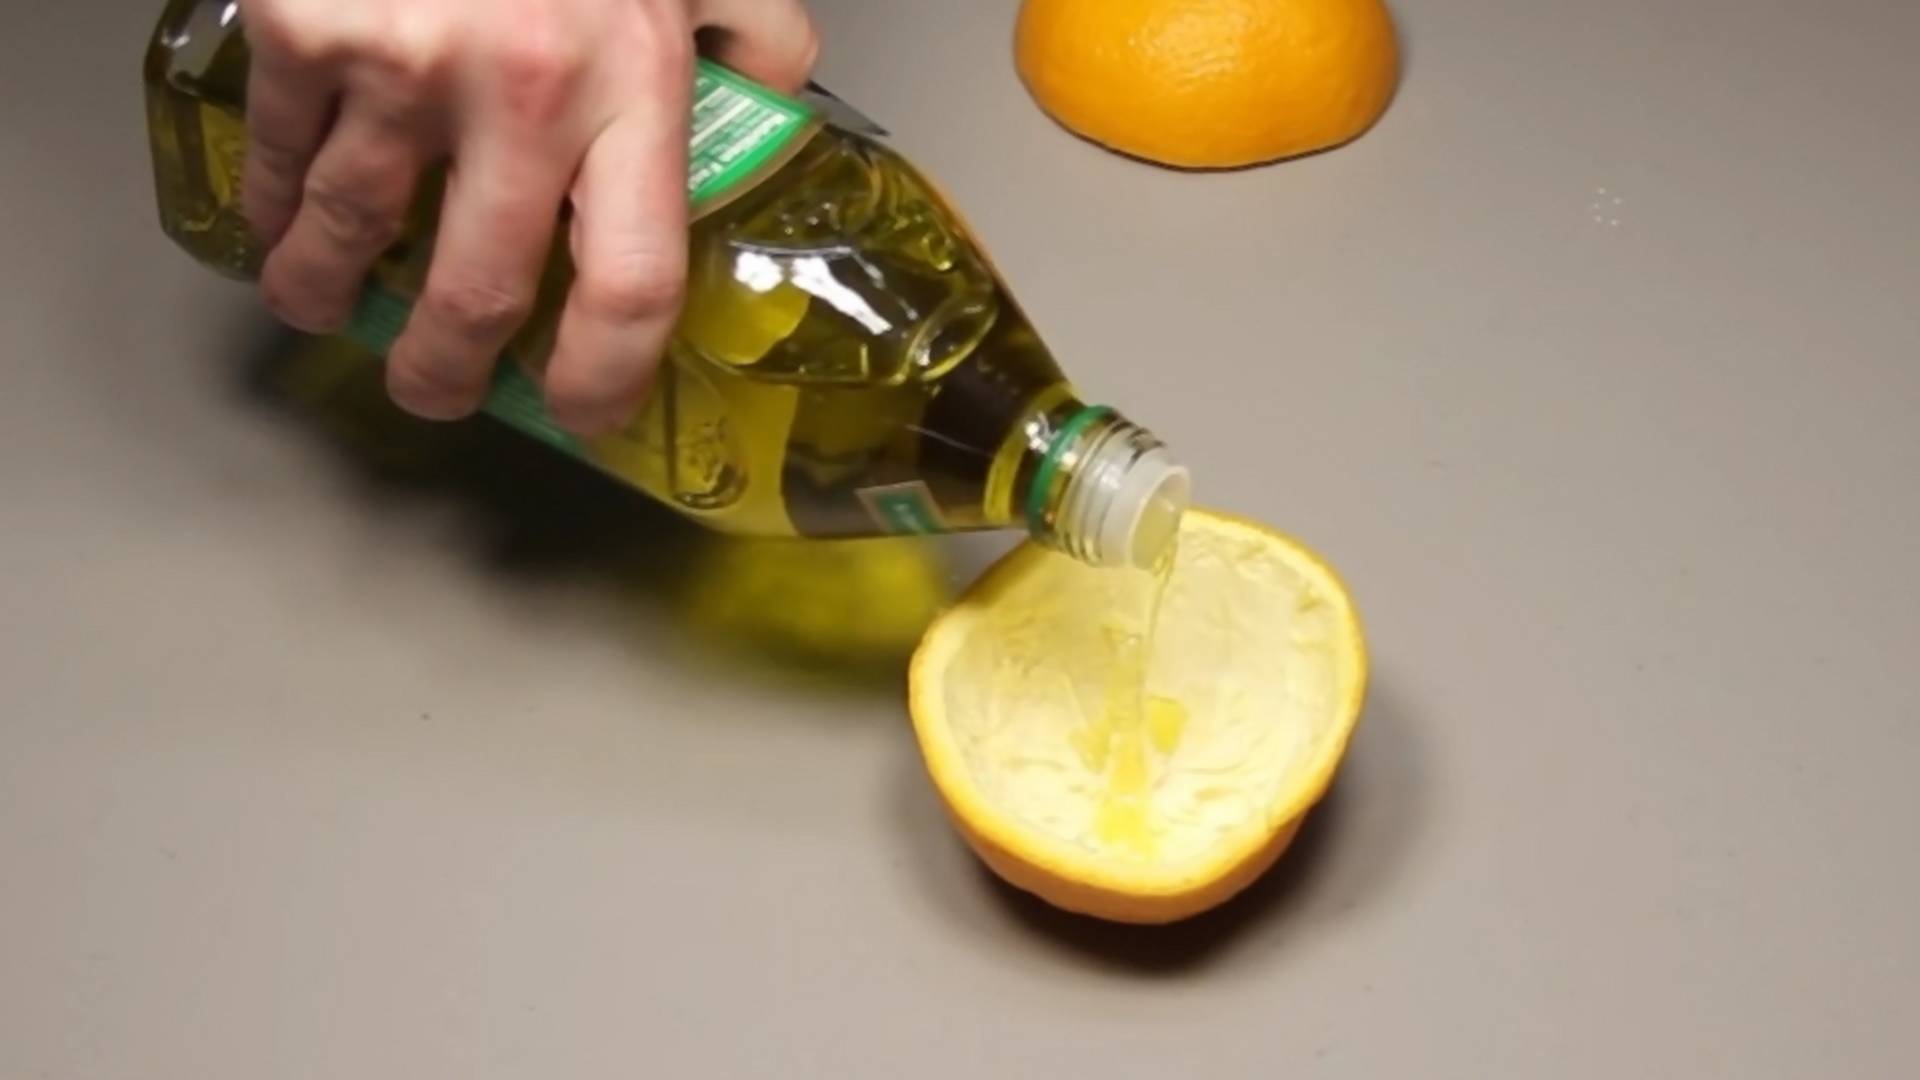 Sipajte ulje u pomorandžinu koru i gledajte kako se dešava magija